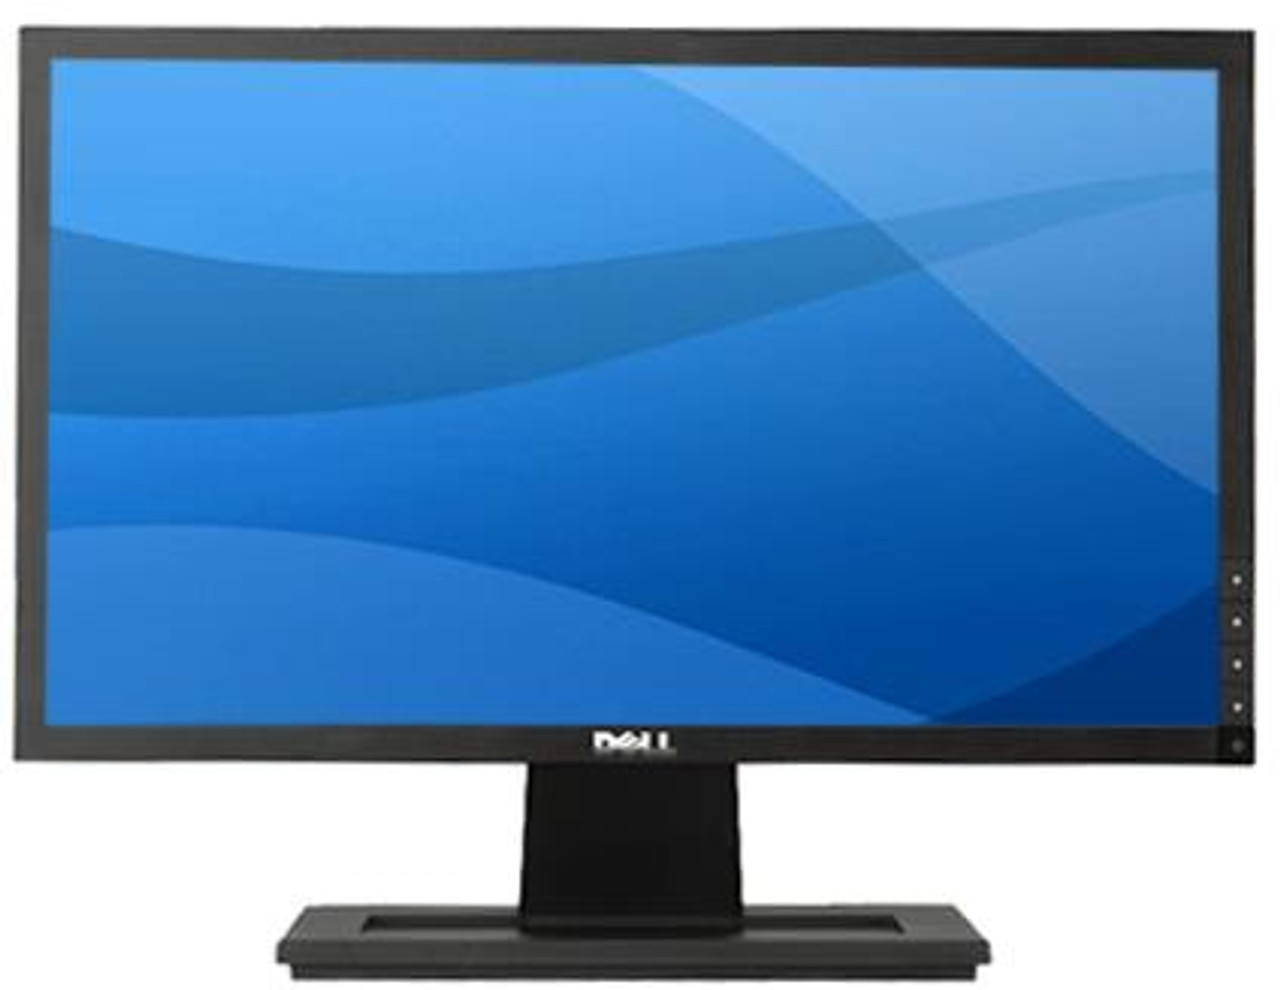 E191011650 - Dell 19-inch E1910 Widescreen LCD Monitor